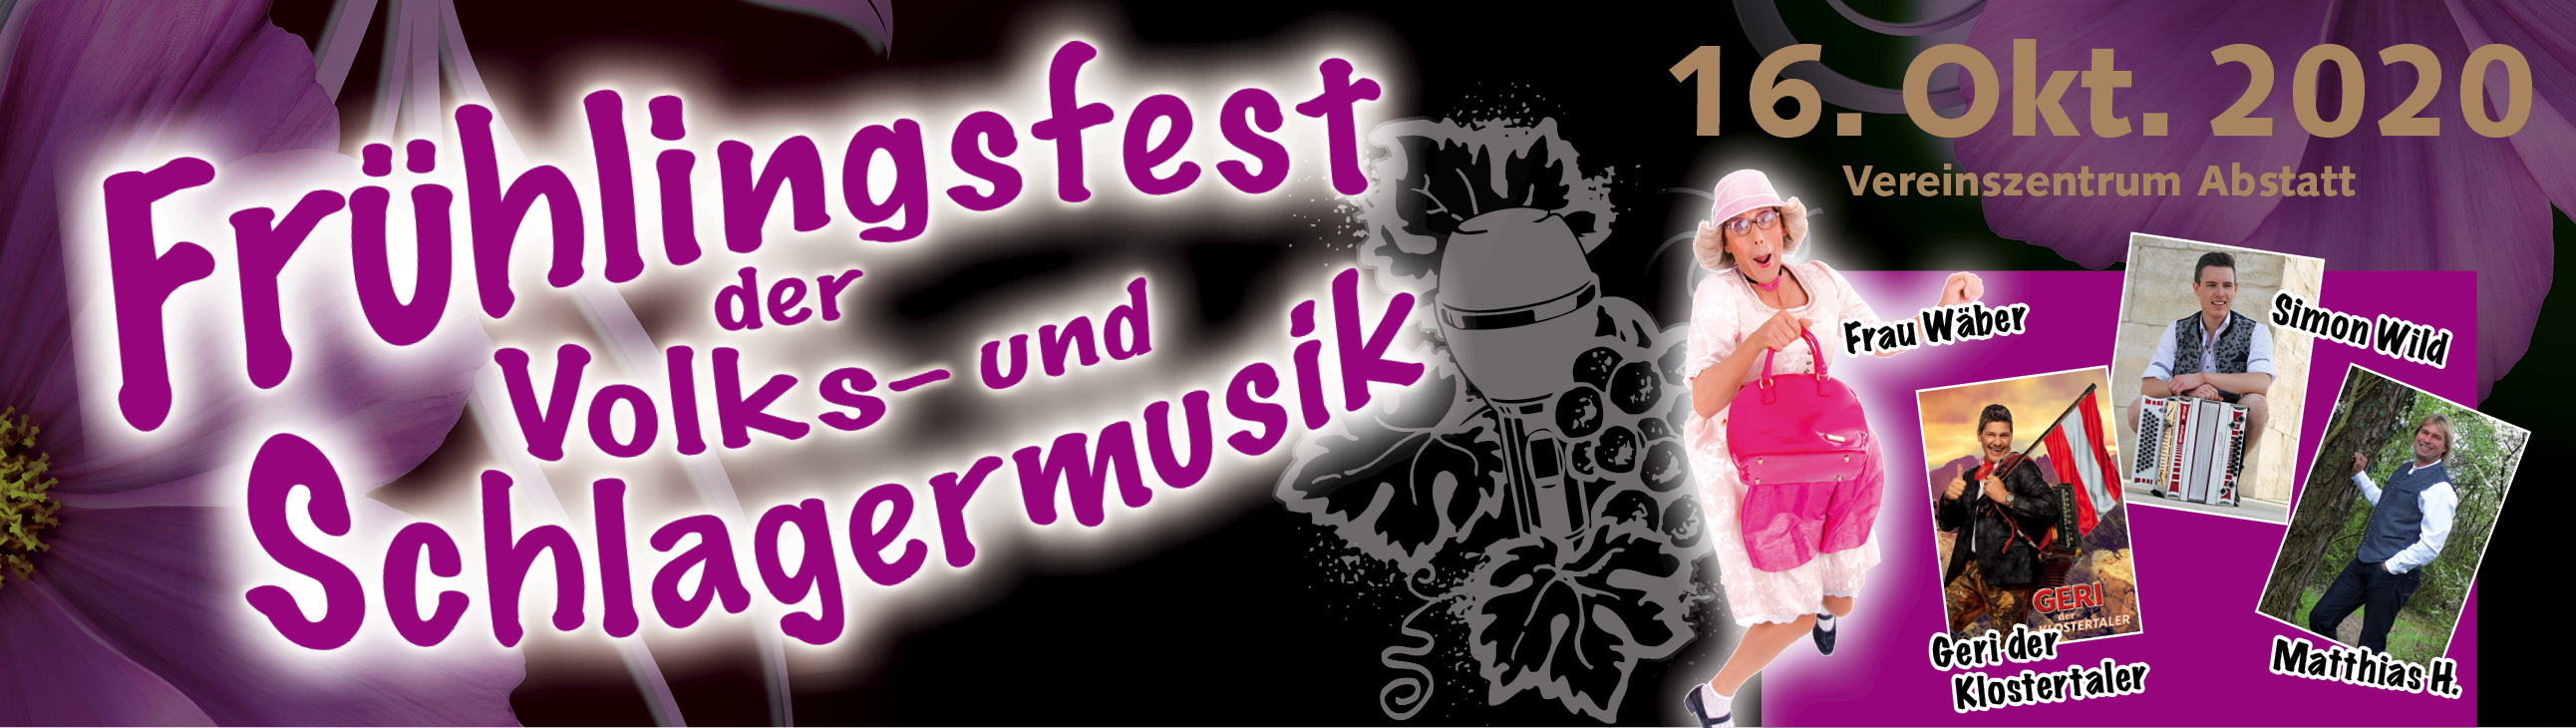 Frühlingsfest der Volks-und Schlagermusik Abstatt am 09. Mai 2020 - Jetzt tickets kaufen